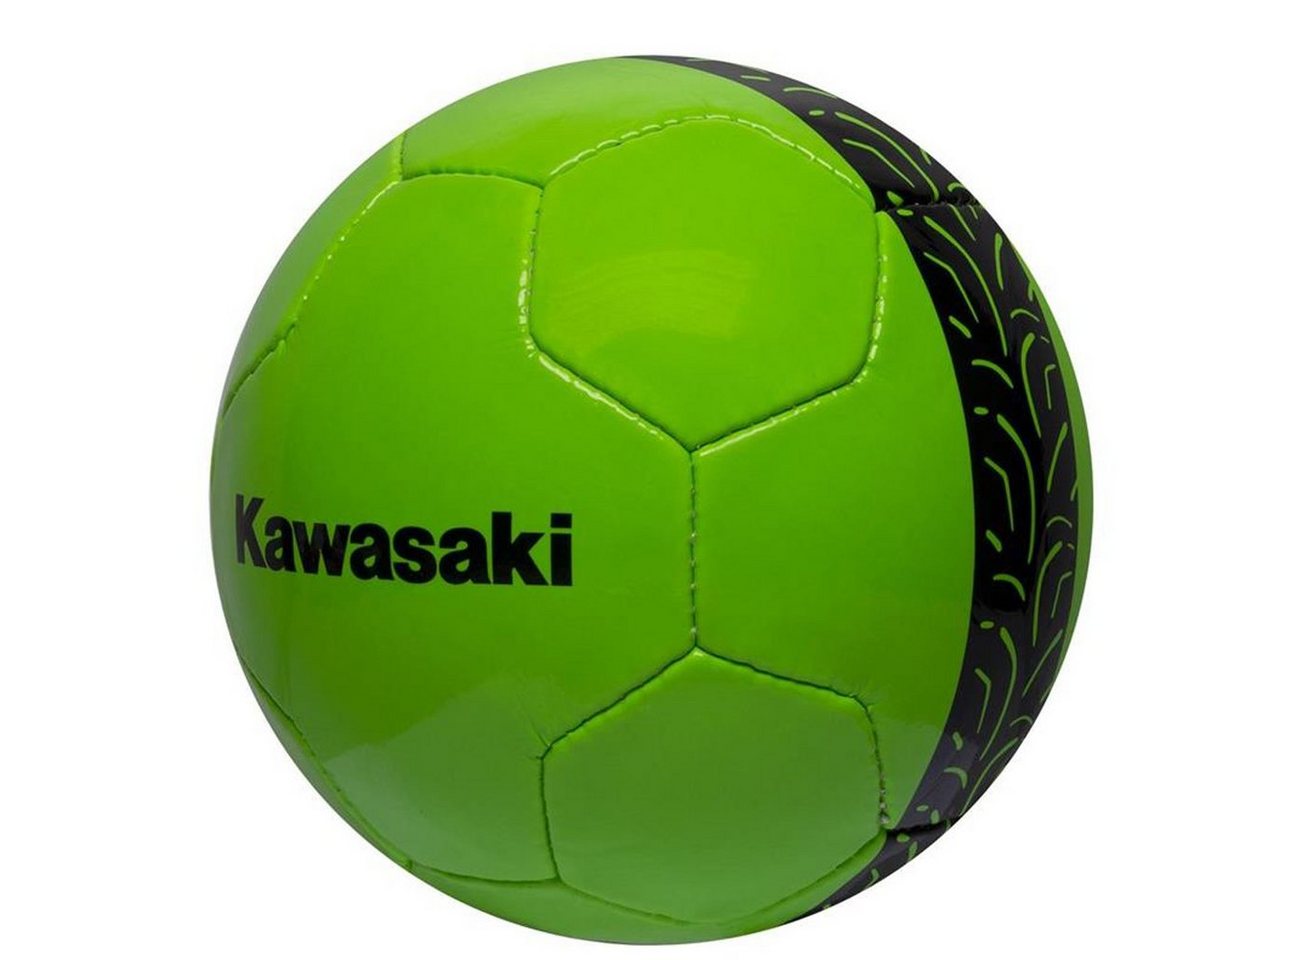 Kawasaki Fußball Kawasaki Fußball von Kawasaki